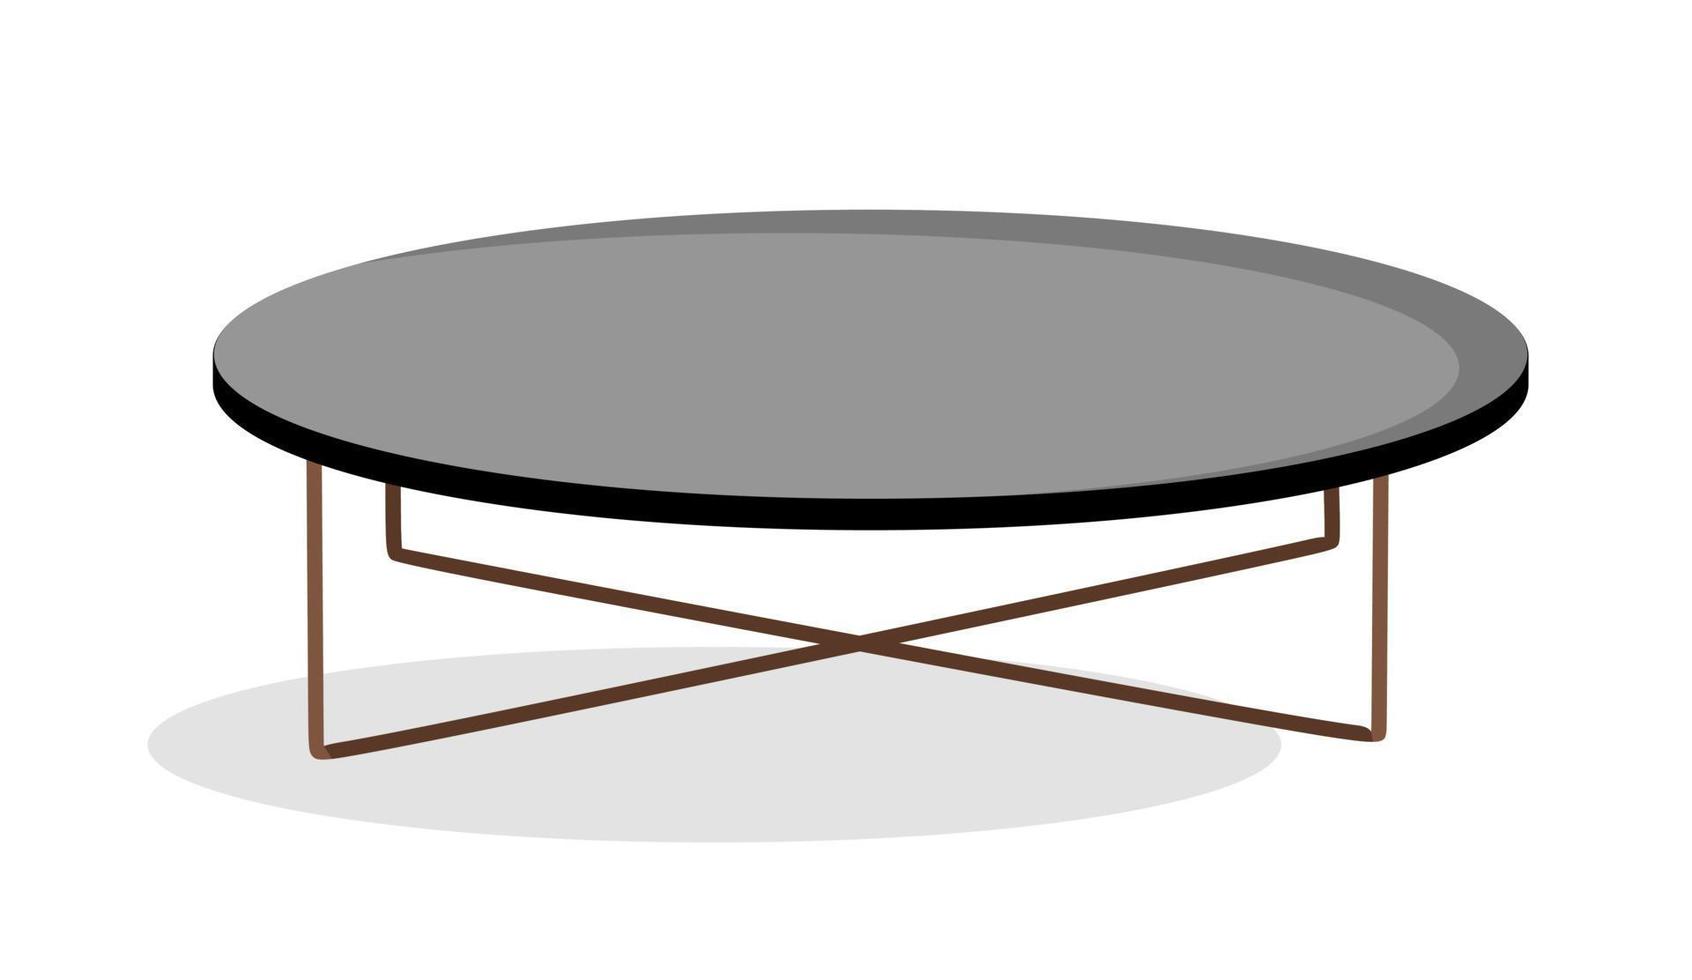 ilustração em vetor de móveis de mesa de café interior moderno em um estilo simples isolado